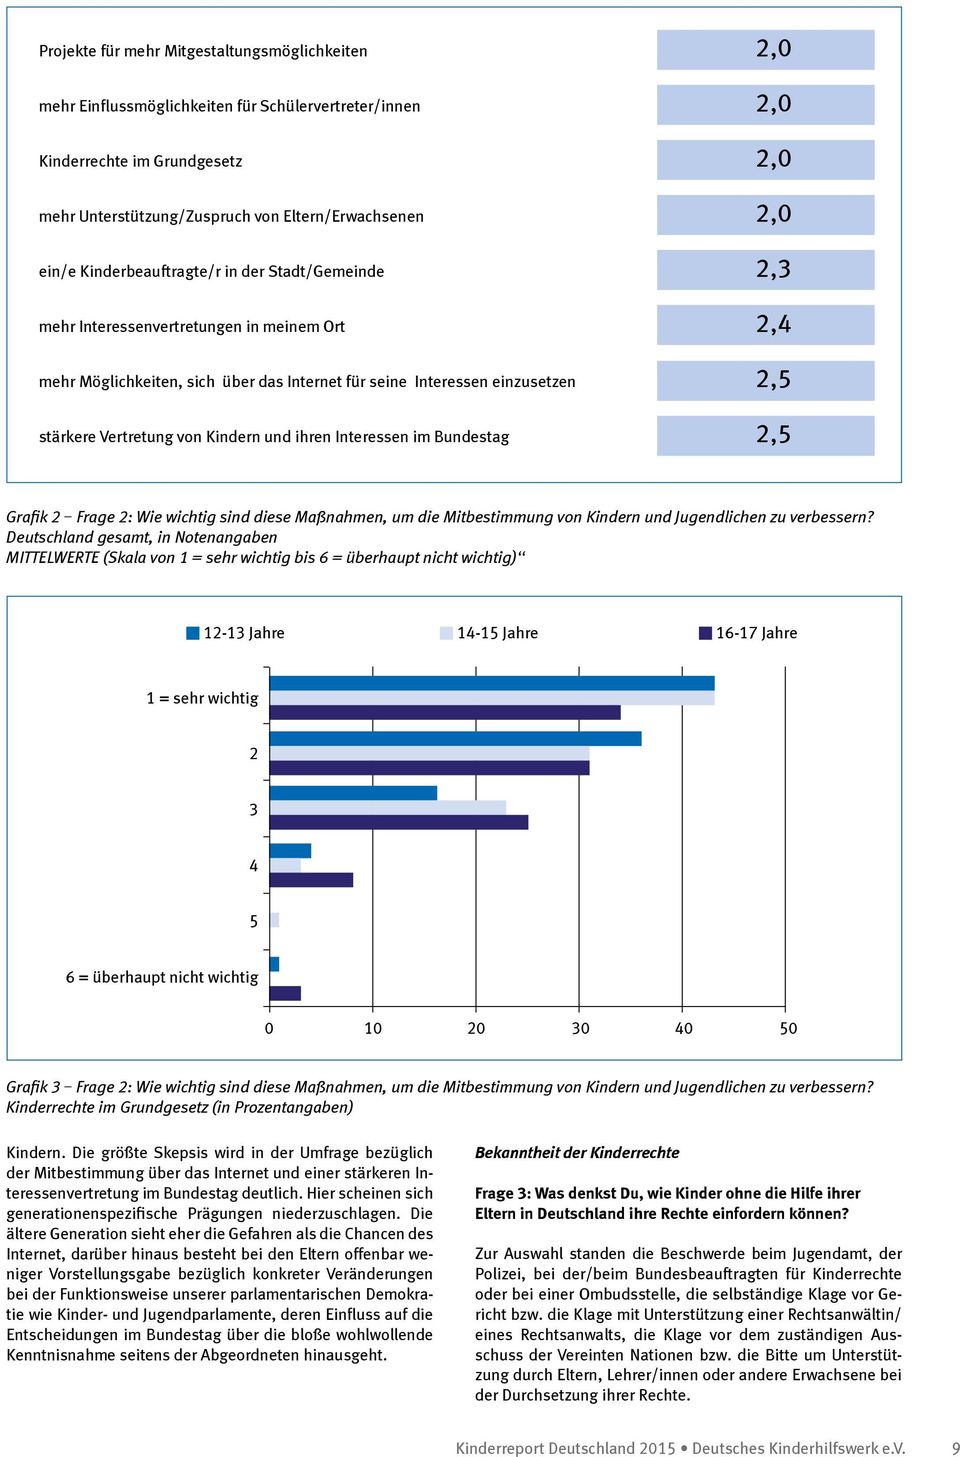 von Kindern und ihren Interessen im Bundestag 2,5 Grafik 2 Frage 2: Wie wichtig sind diese Maßnahmen, um die Mitbestimmung von Kindern und Jugendlichen zu verbessern?